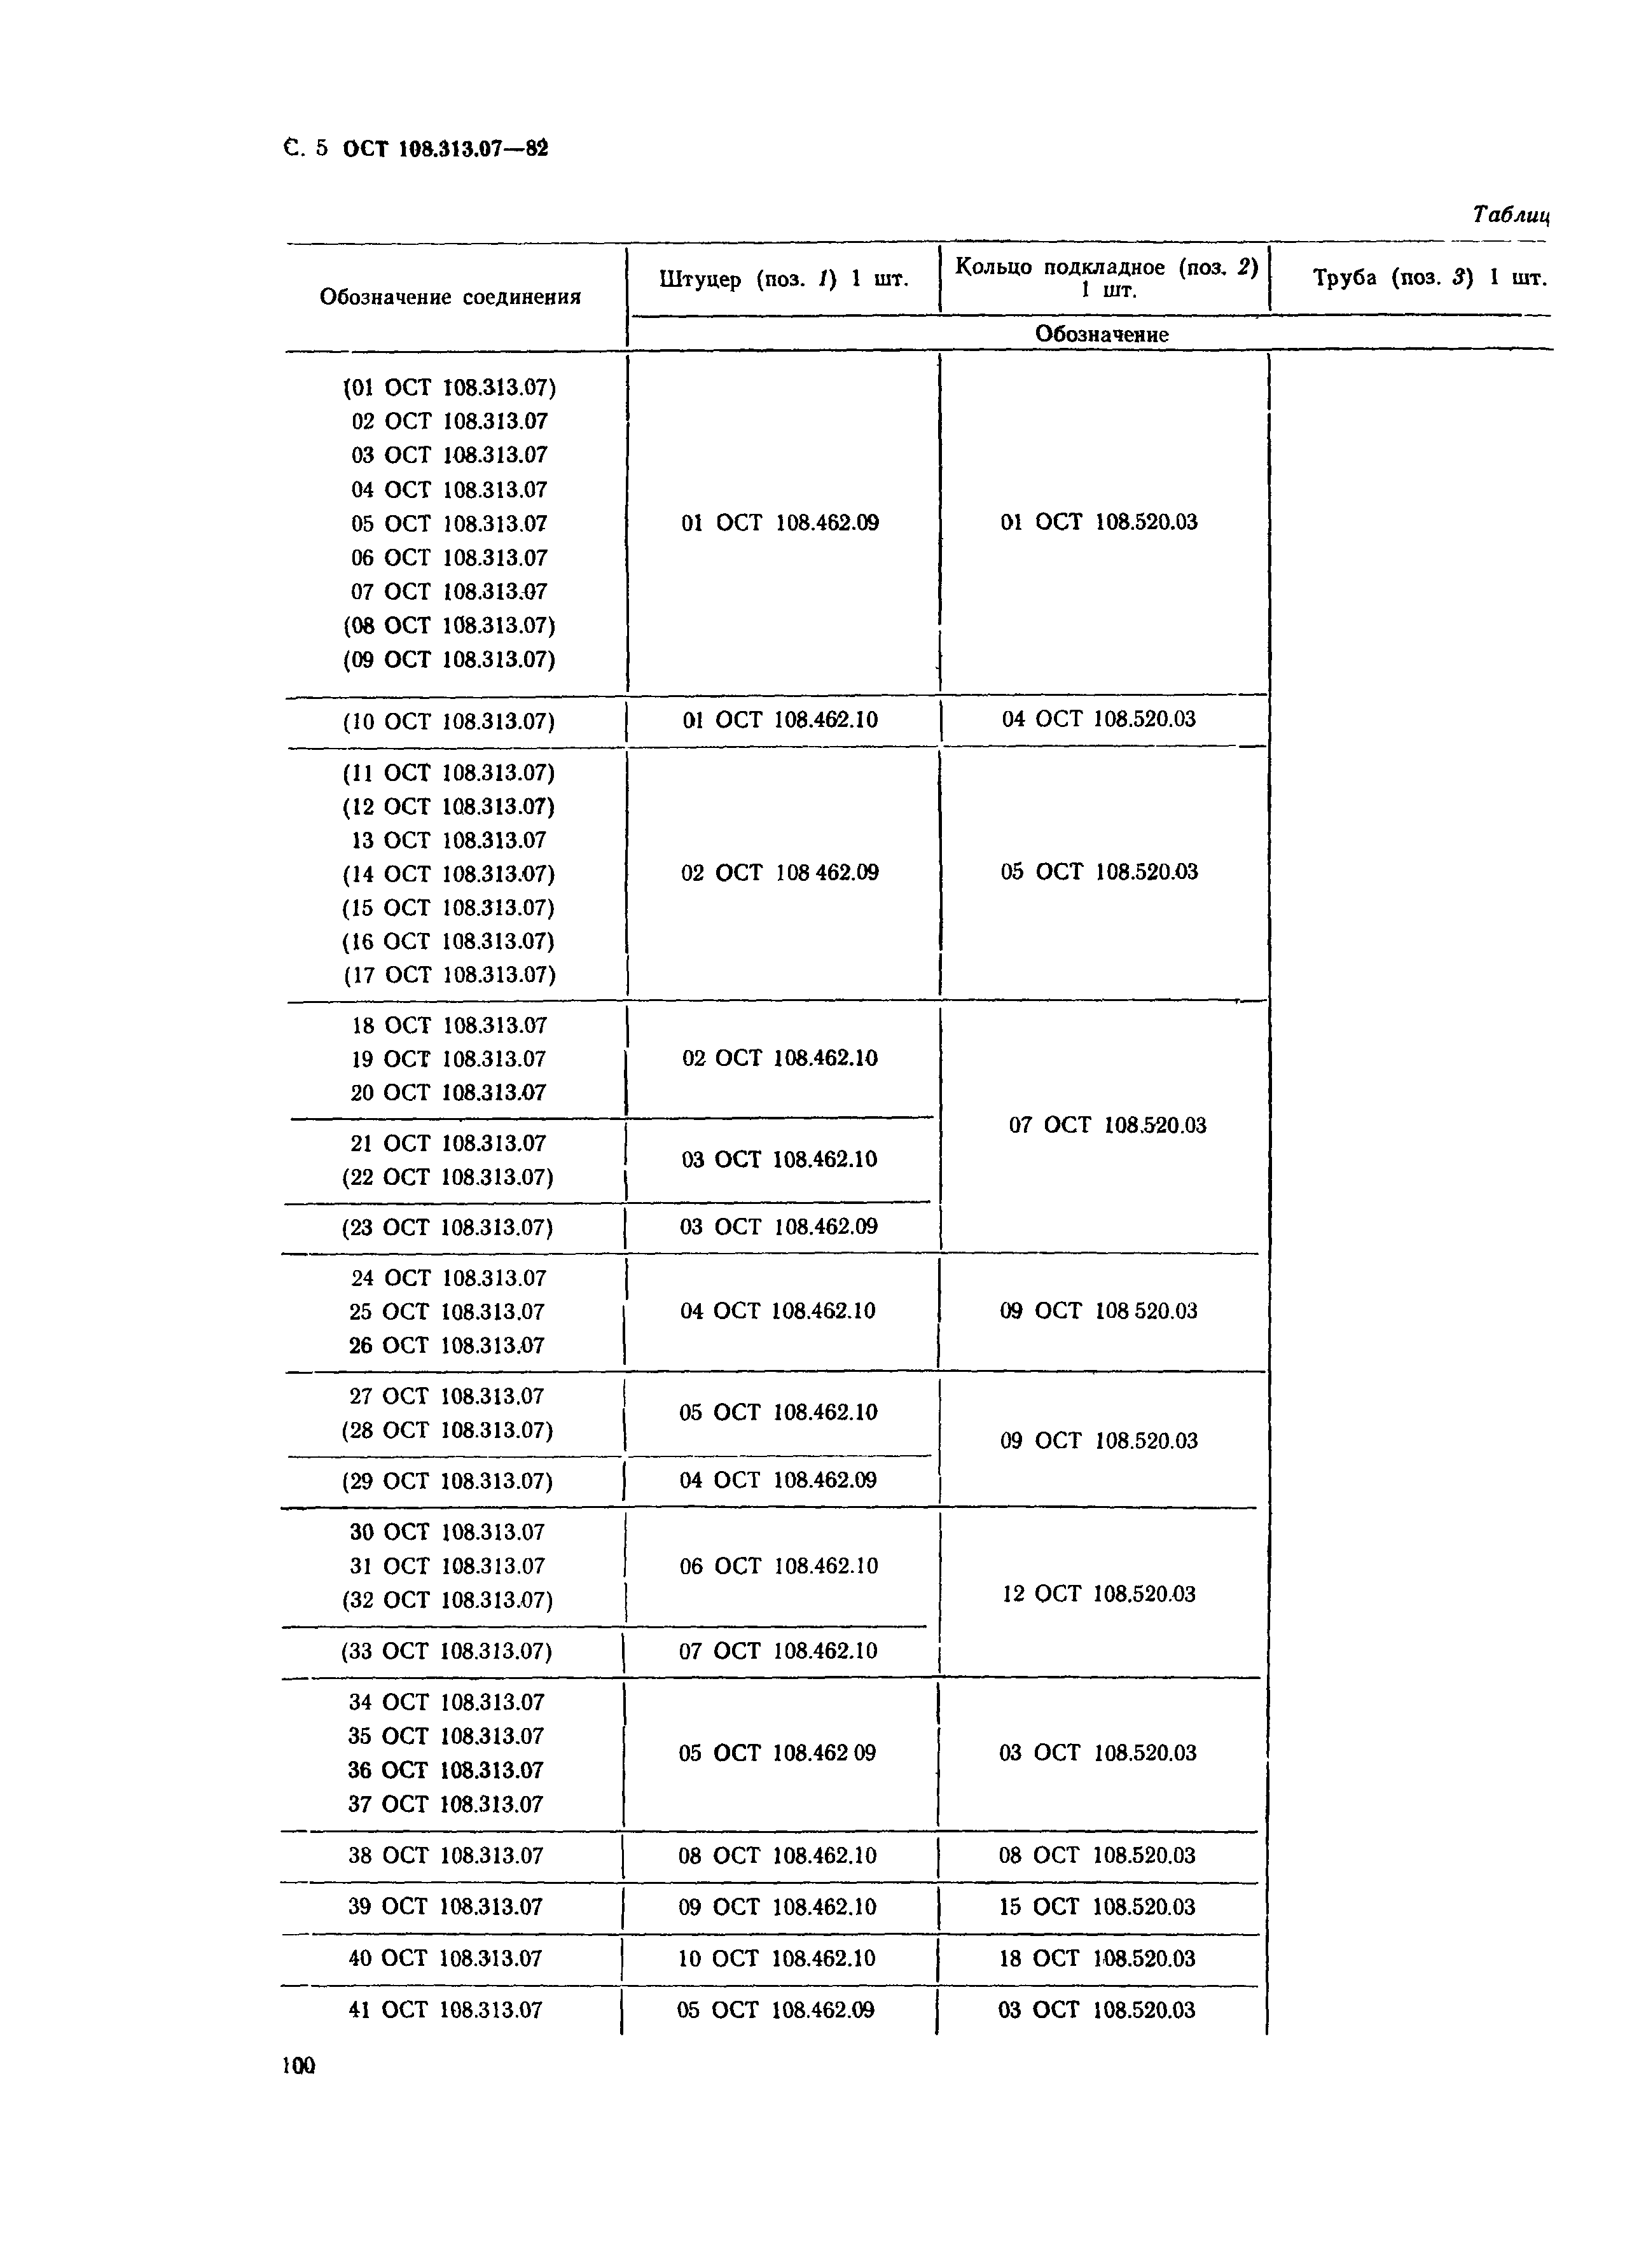 ОСТ 108.313.07-82